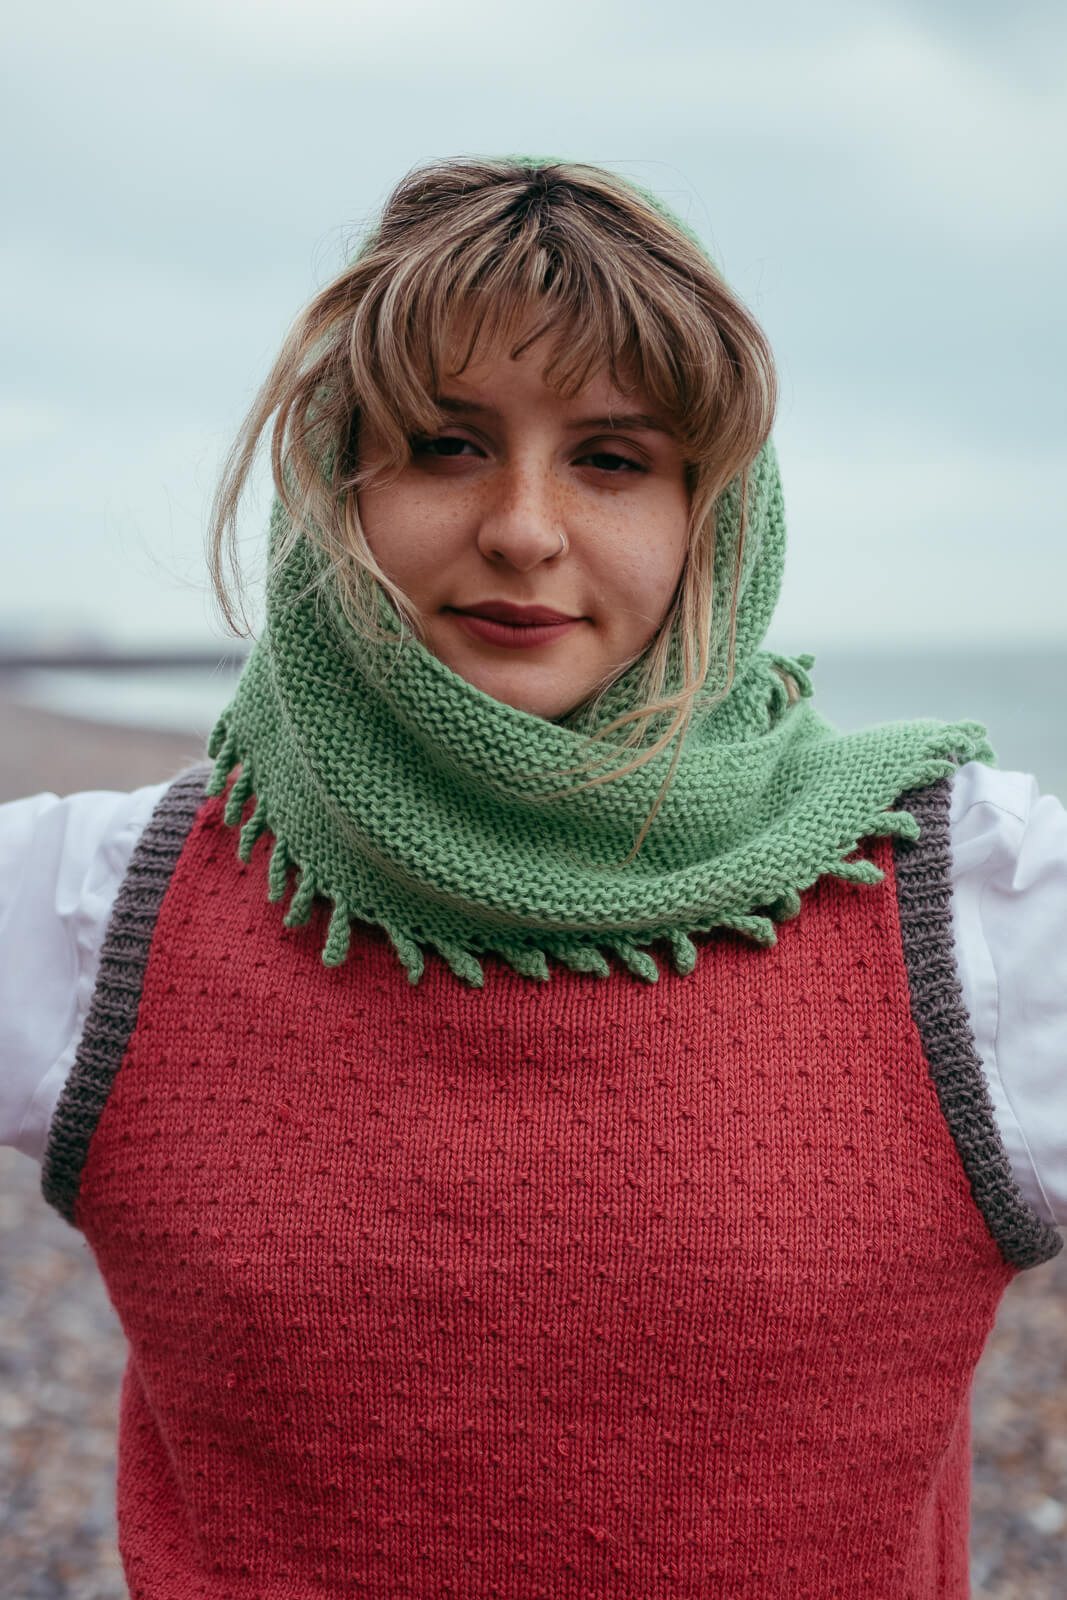 Alpaca wool knit kit shawl in Jade